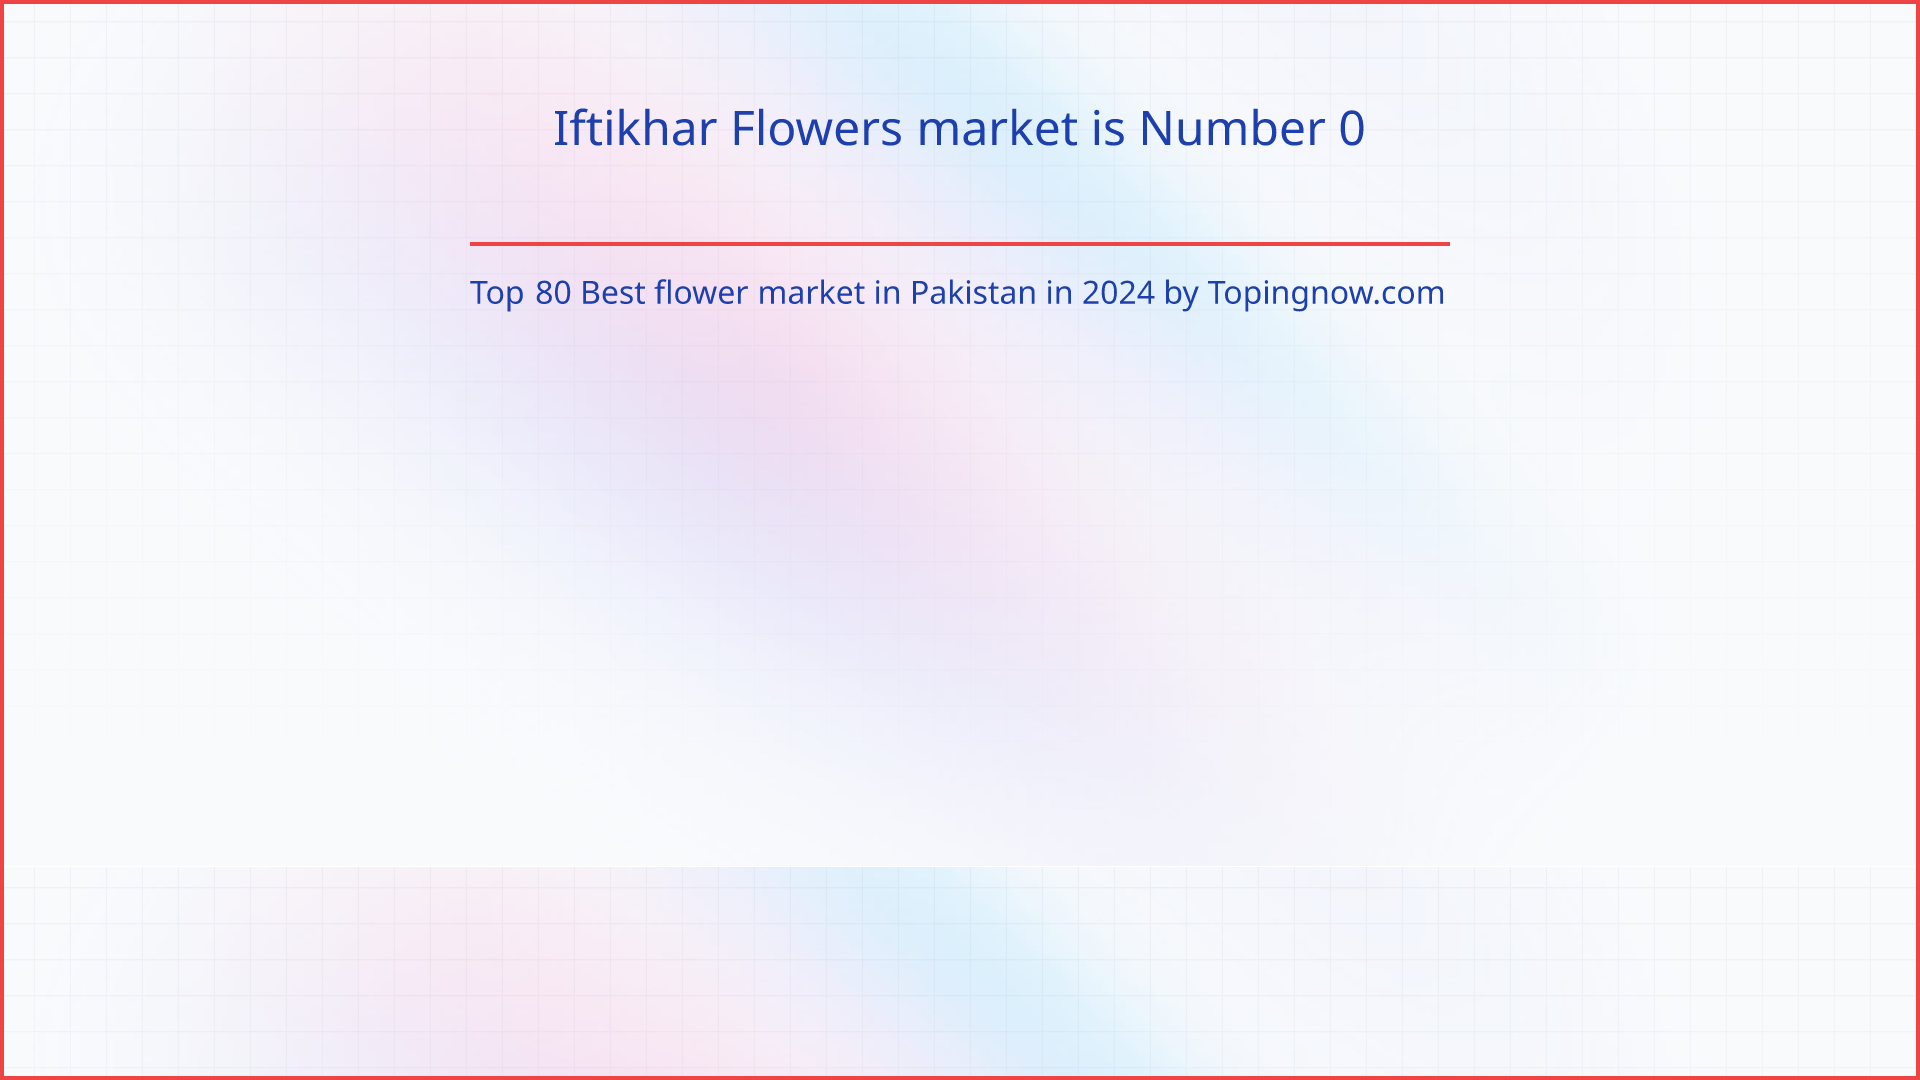 Iftikhar Flowers market: Top 80 Best flower market in Pakistan in 2024